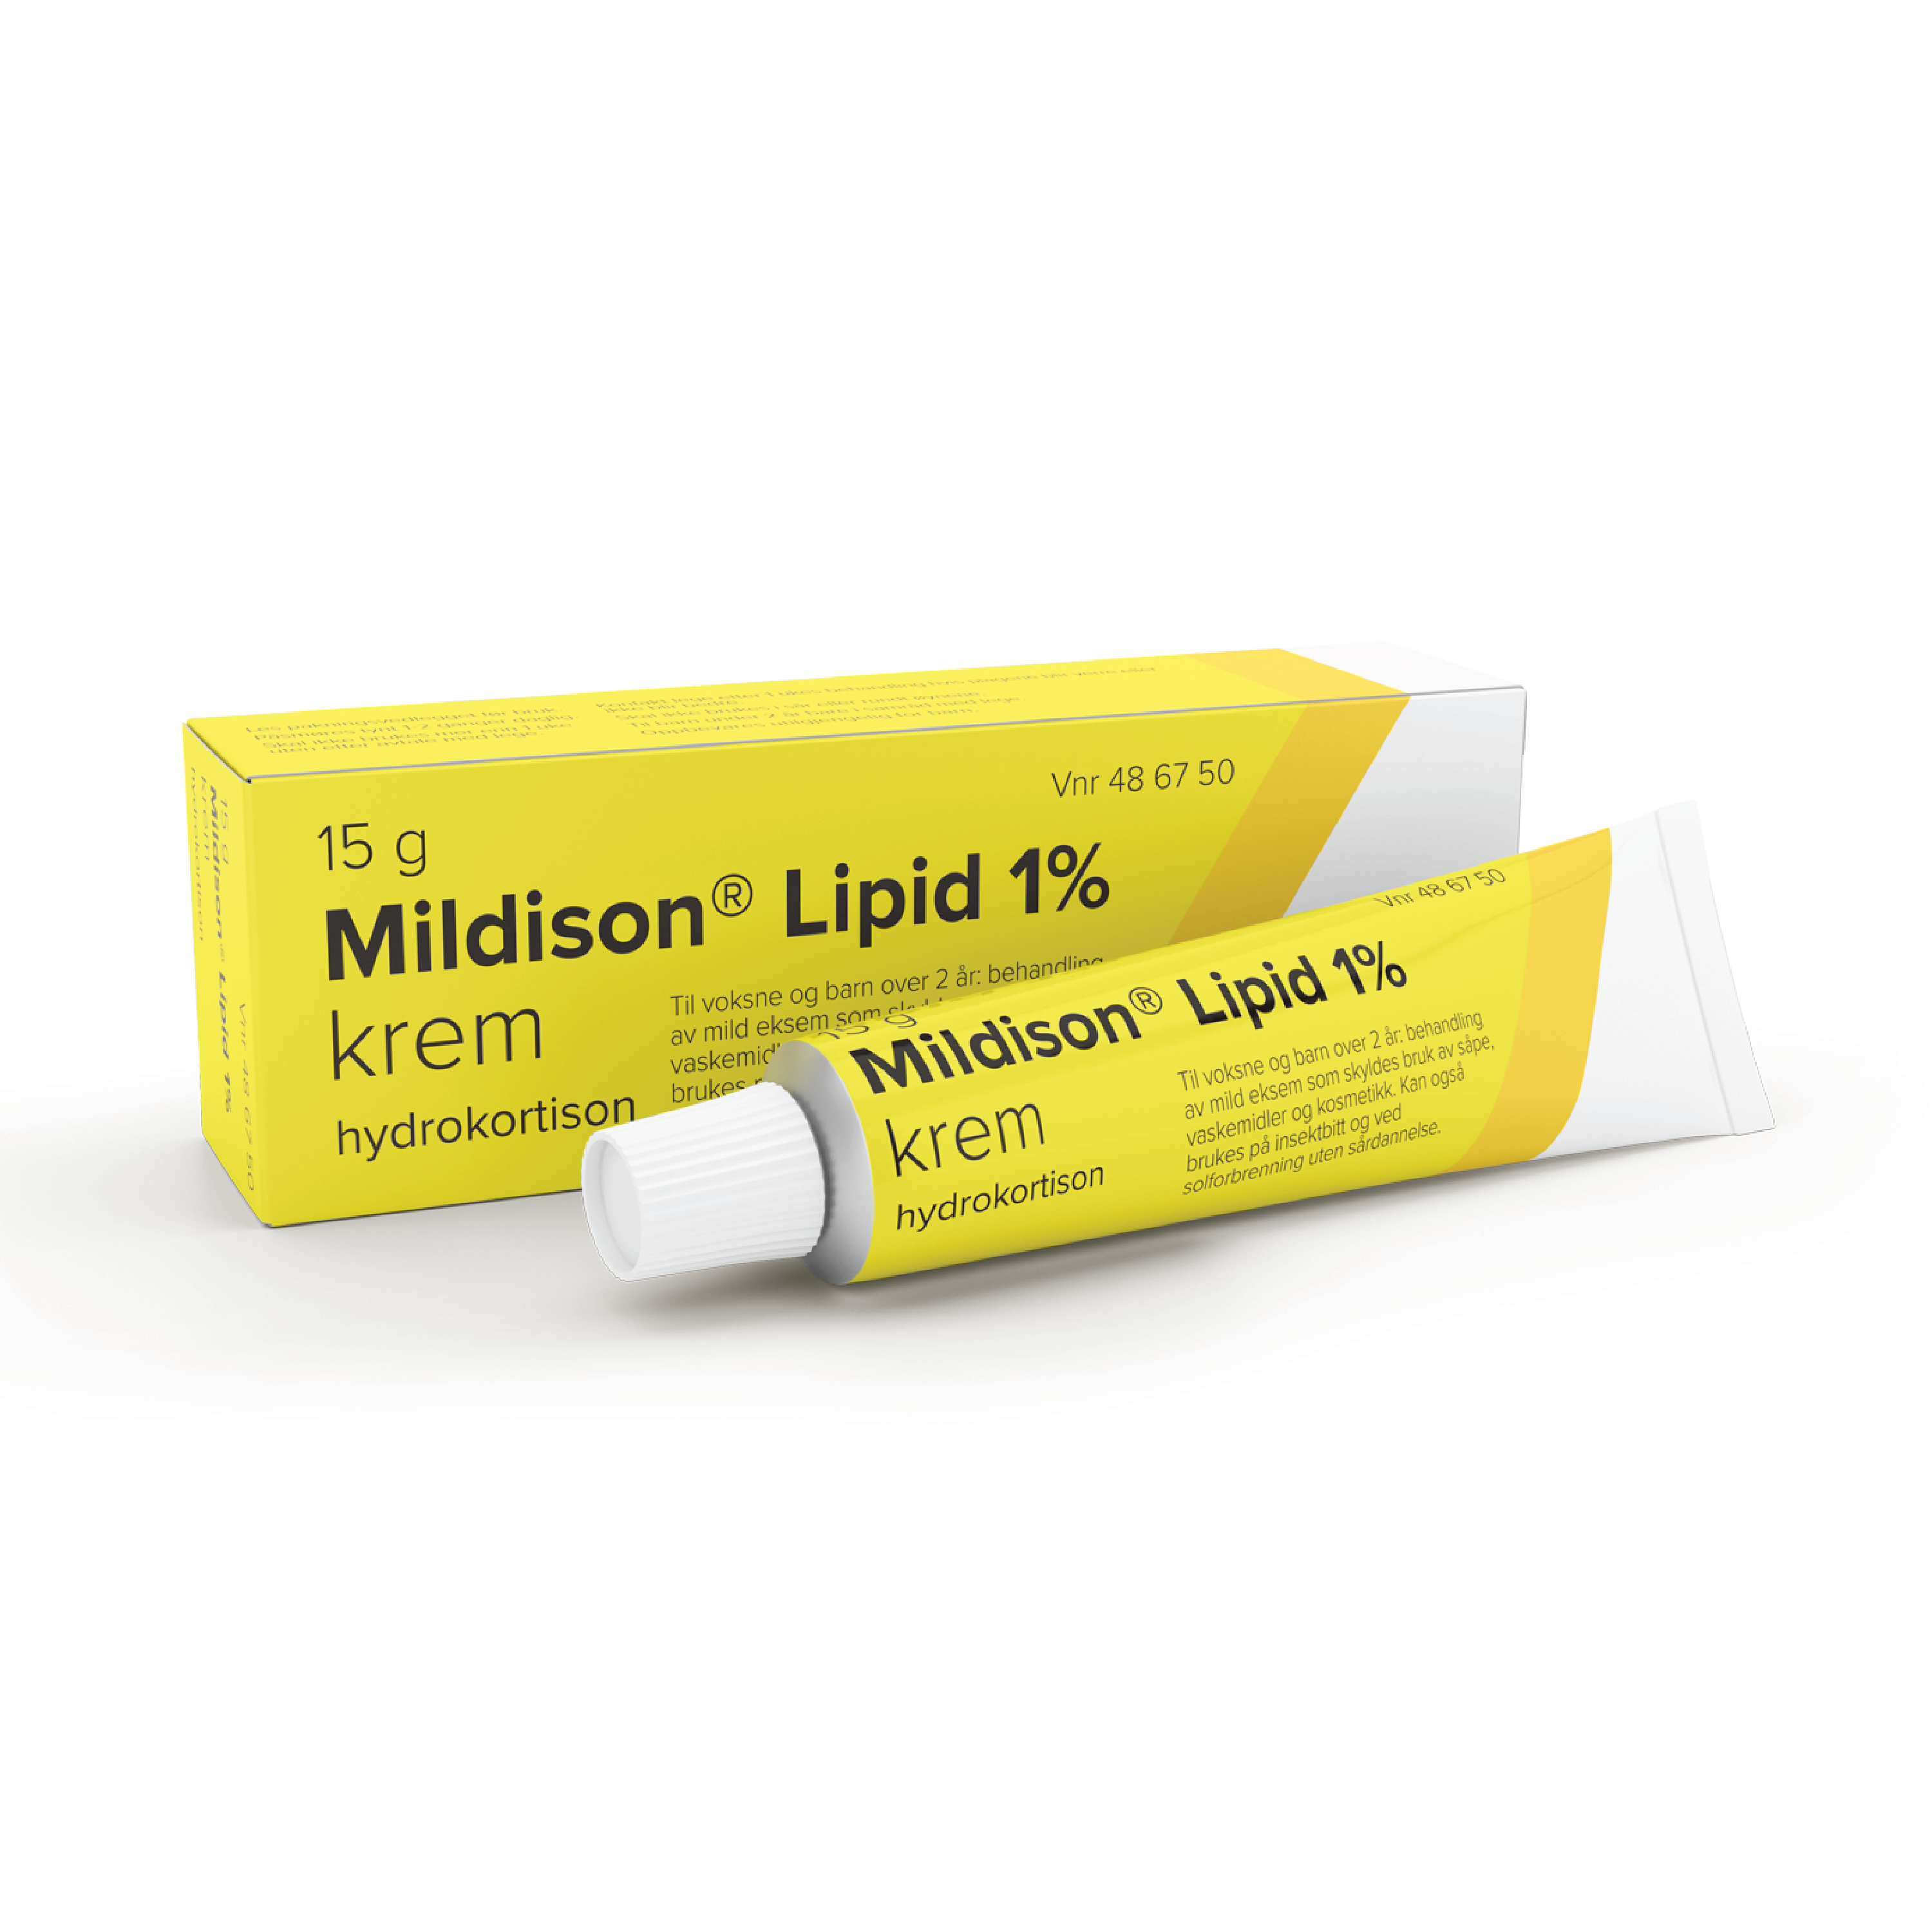 Mildison Lipid krem 1%, 15 g.